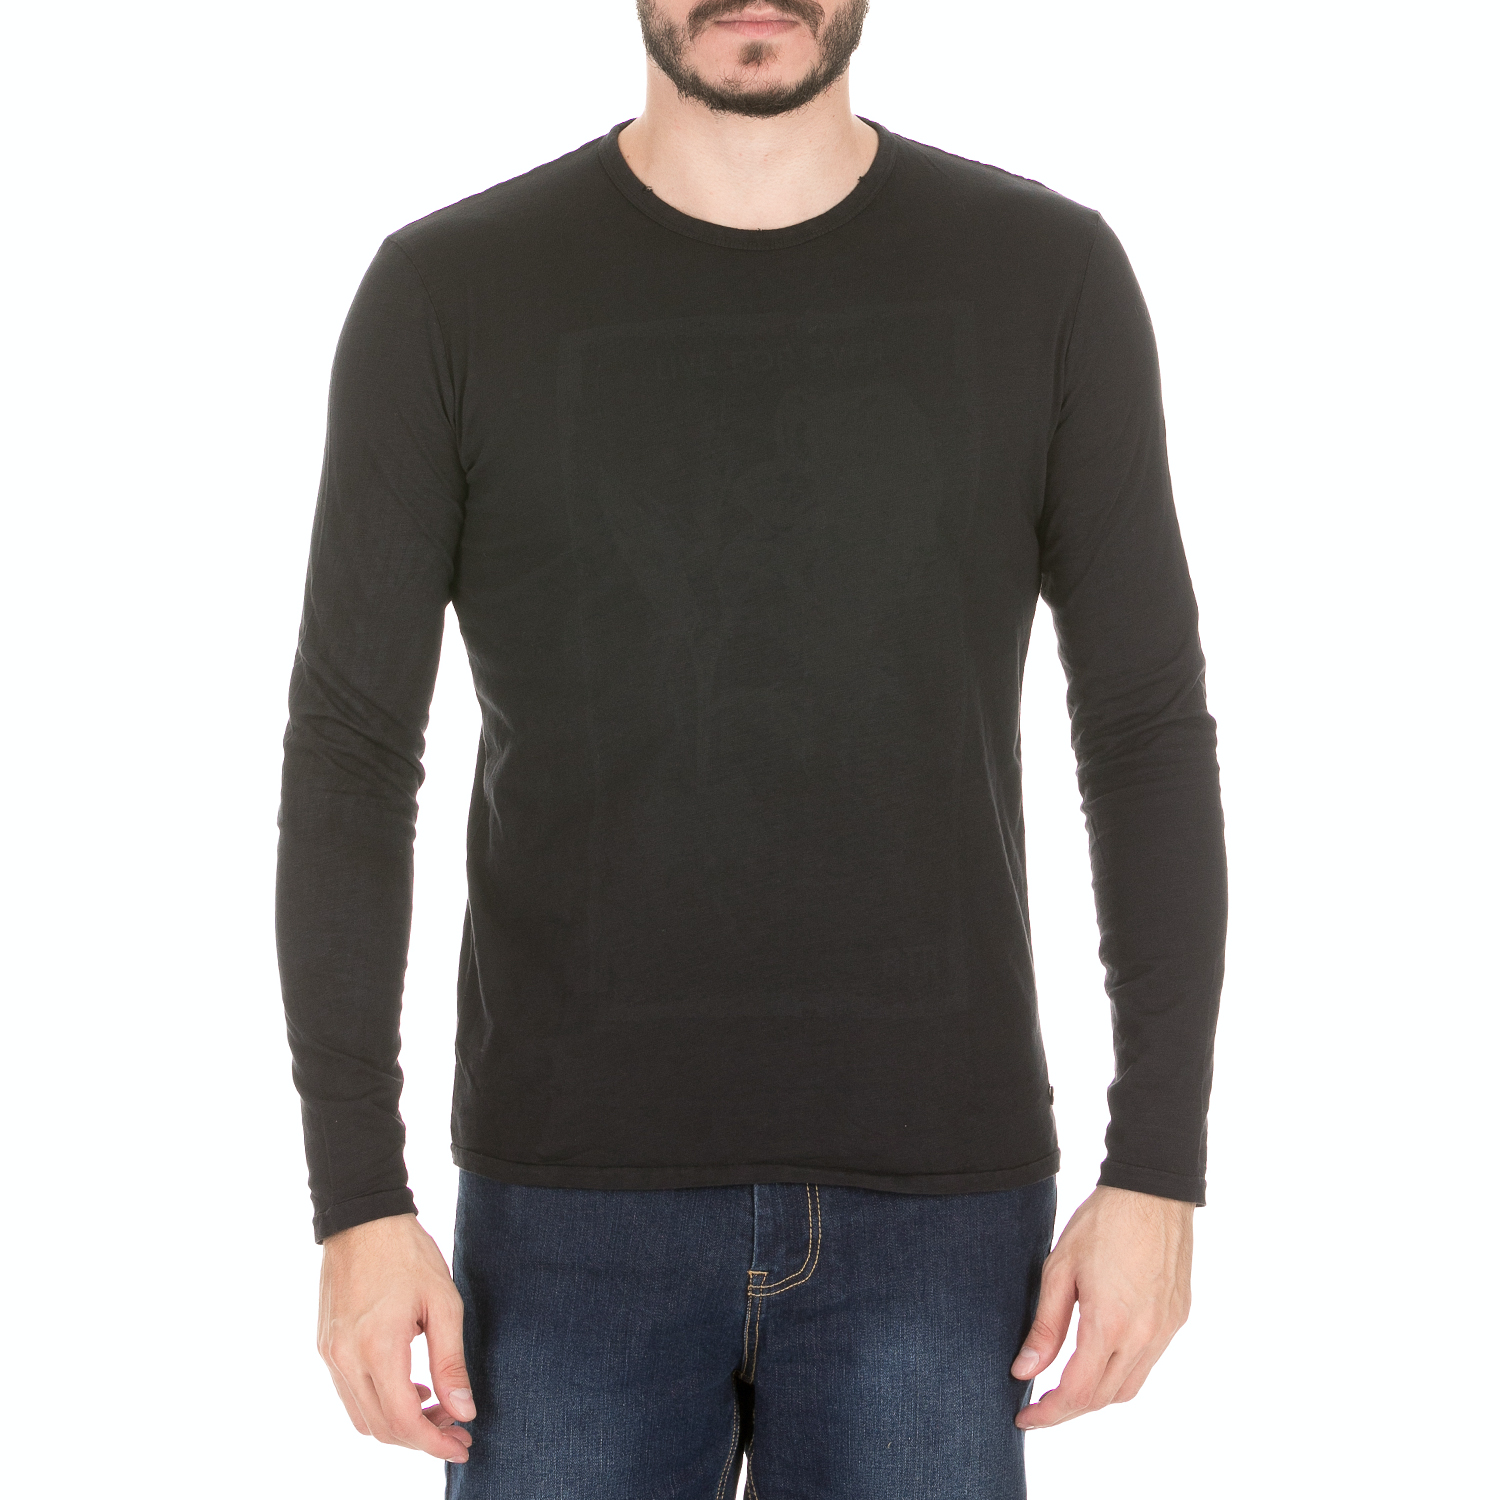 Ανδρικά/Ρούχα/Μπλούζες/Μακρυμάνικες BATTERY - Ανδρική μπλούζα BATTERY μαύρη